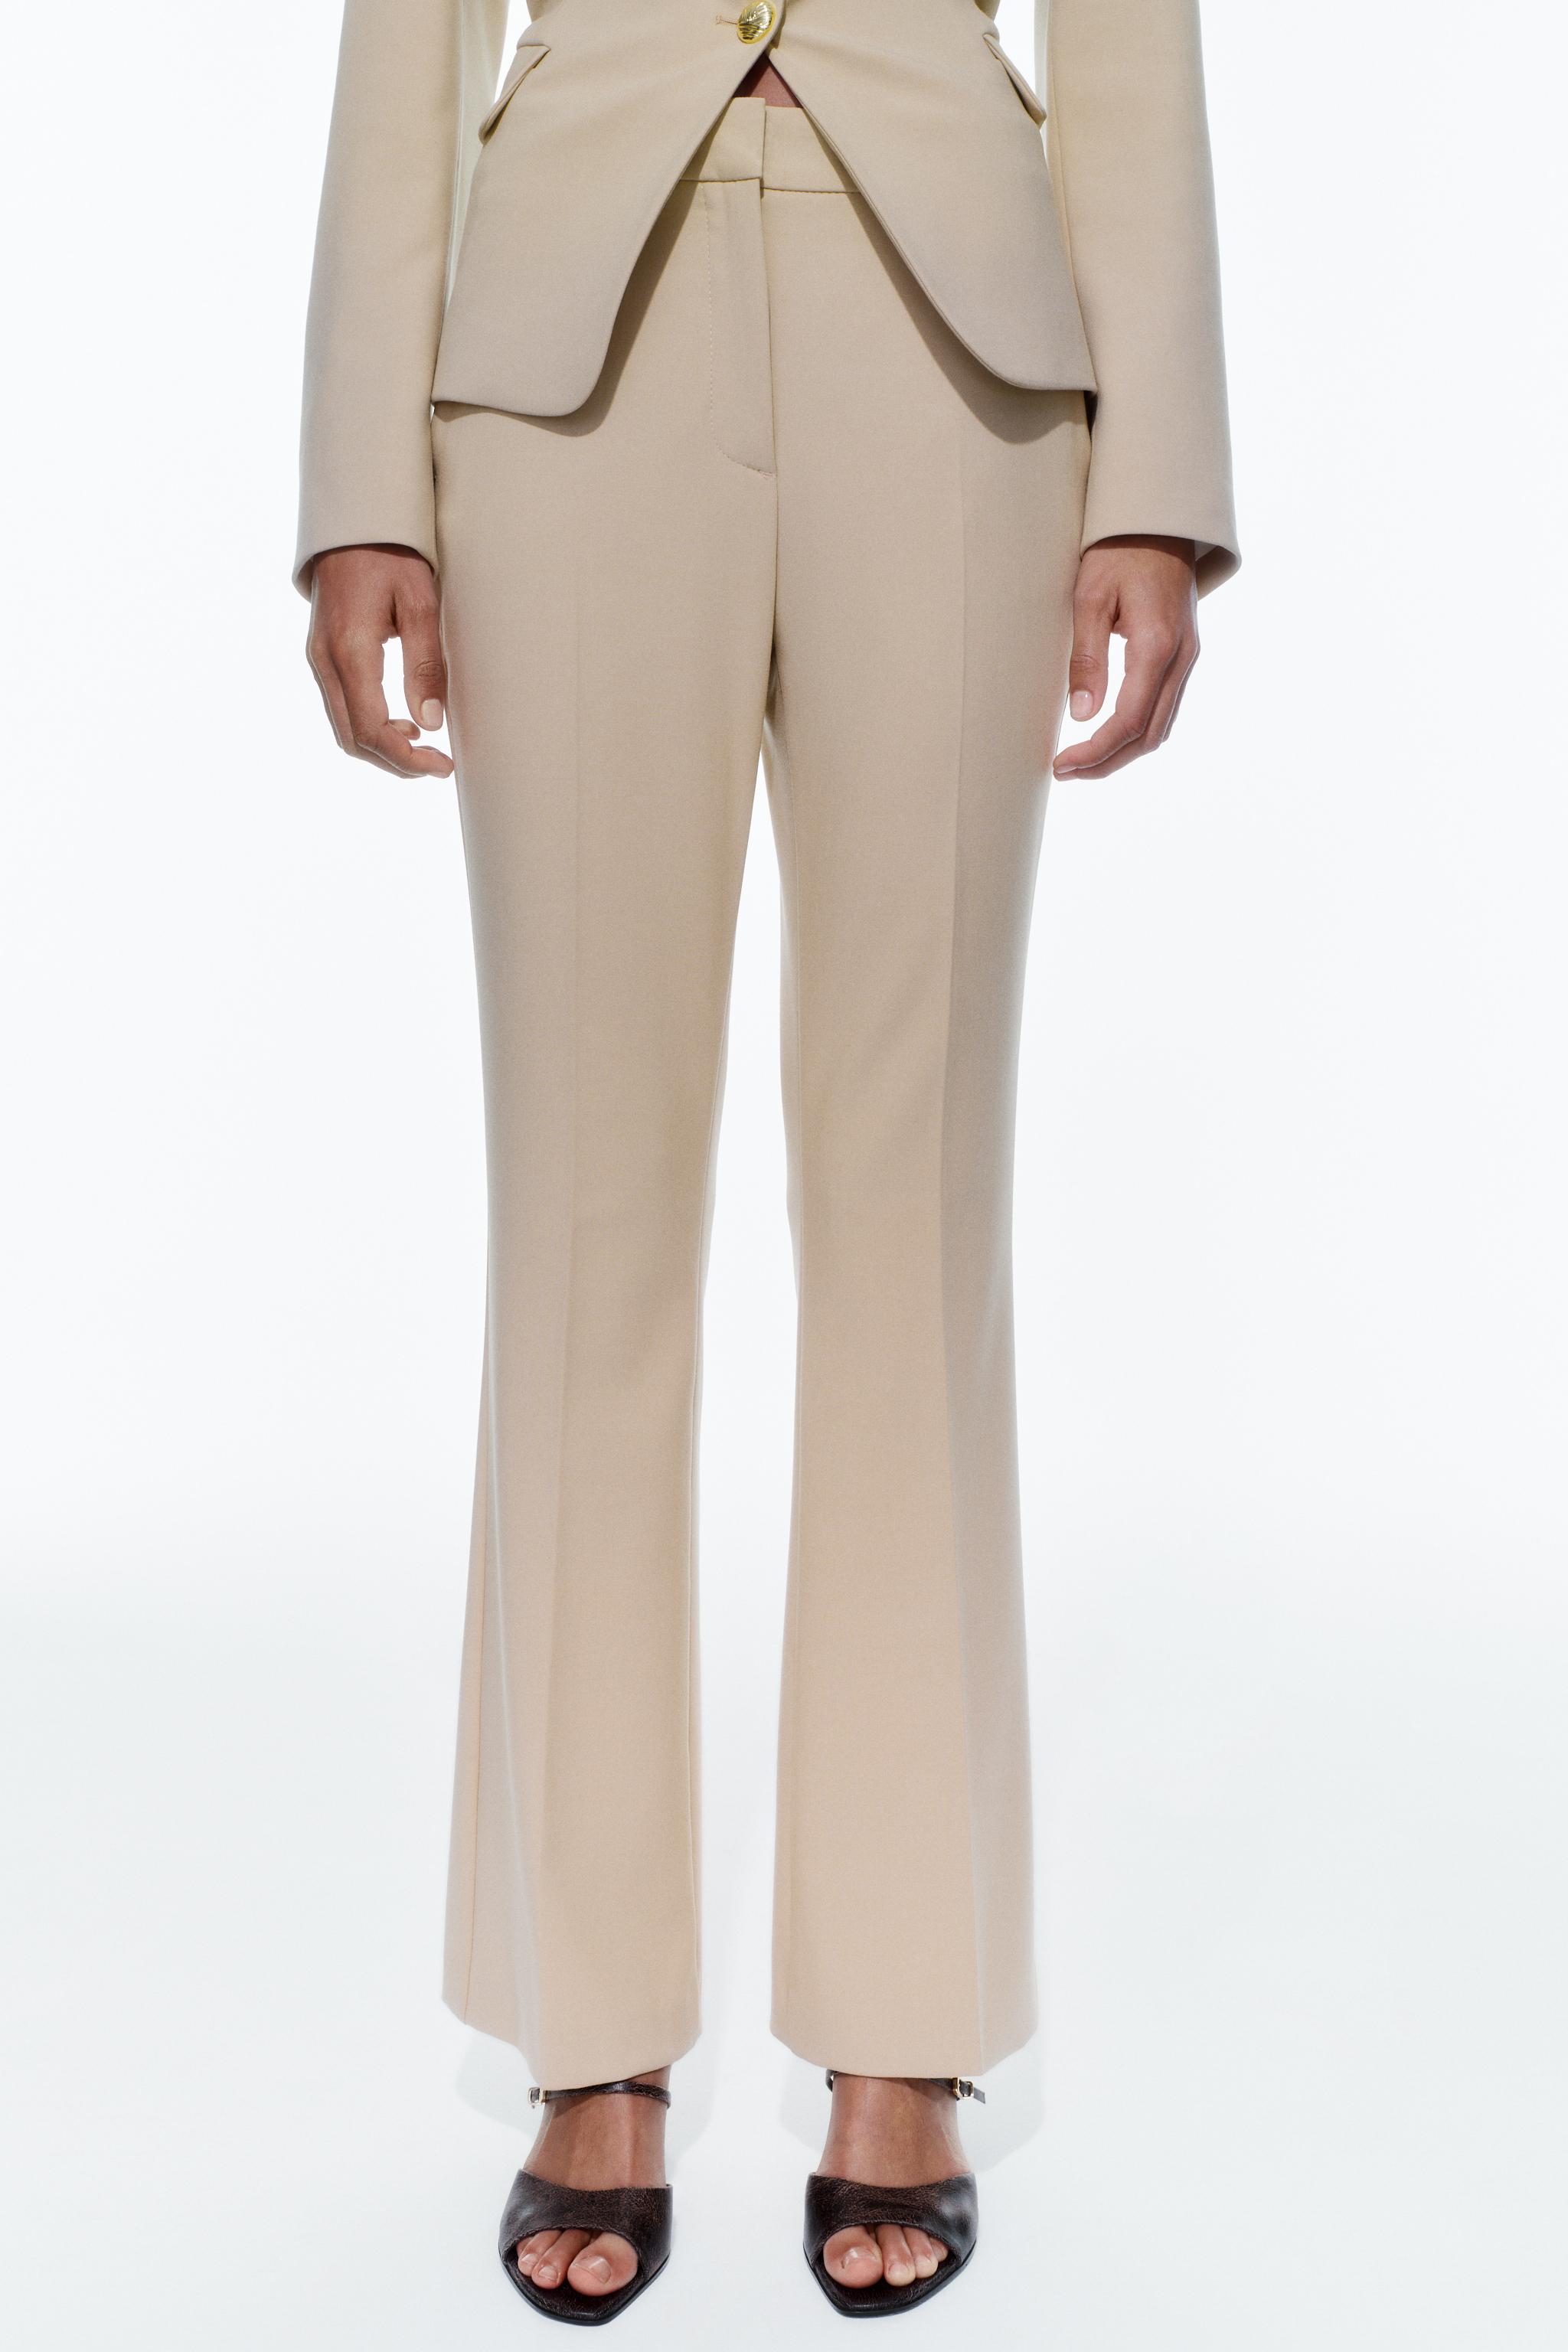 Zara High Waisted Flat Front Pants w/ Gold Button Detail Size Medium 